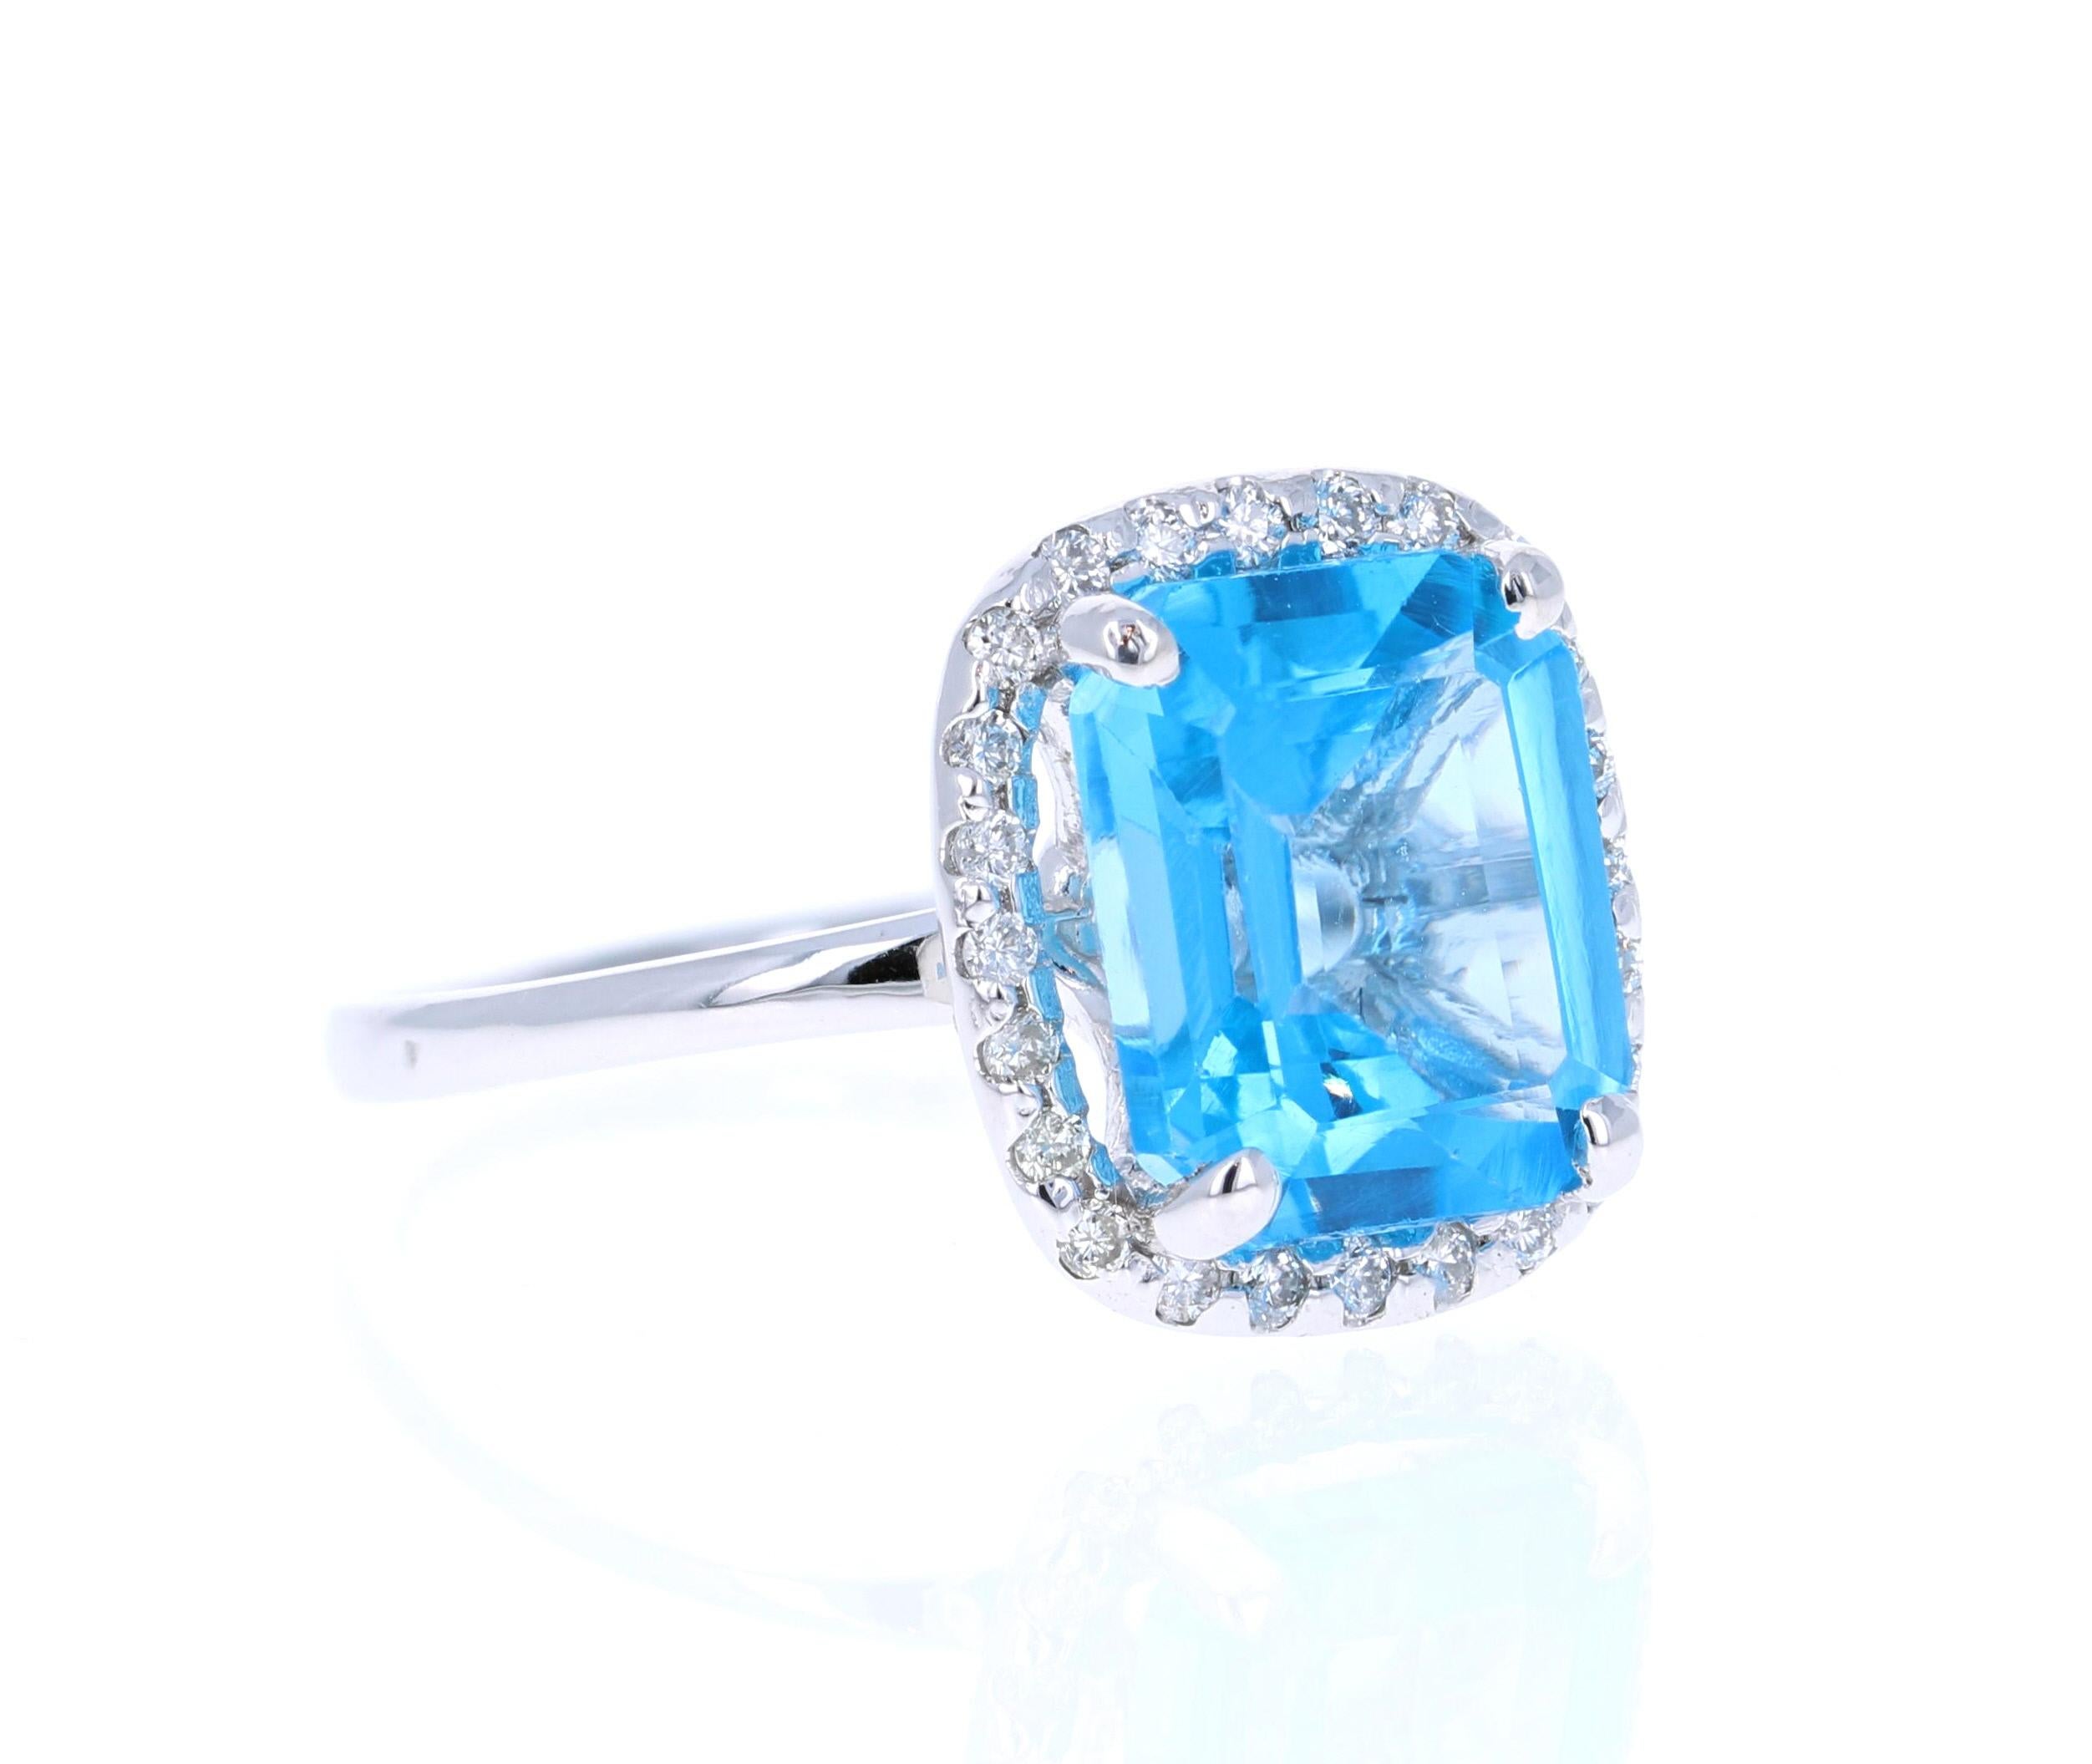 Dieser Ovalschliff-Blautopas-Diamantring hat einen Blautopas von 5,27 Karat und ist umgeben von 24 Diamanten im Rundschliff mit einem Gewicht von 0,24 Karat. Das Gesamtkaratgewicht des Rings beträgt 5,51 Karat. (Reinheit der Diamanten: SI, Farbe der